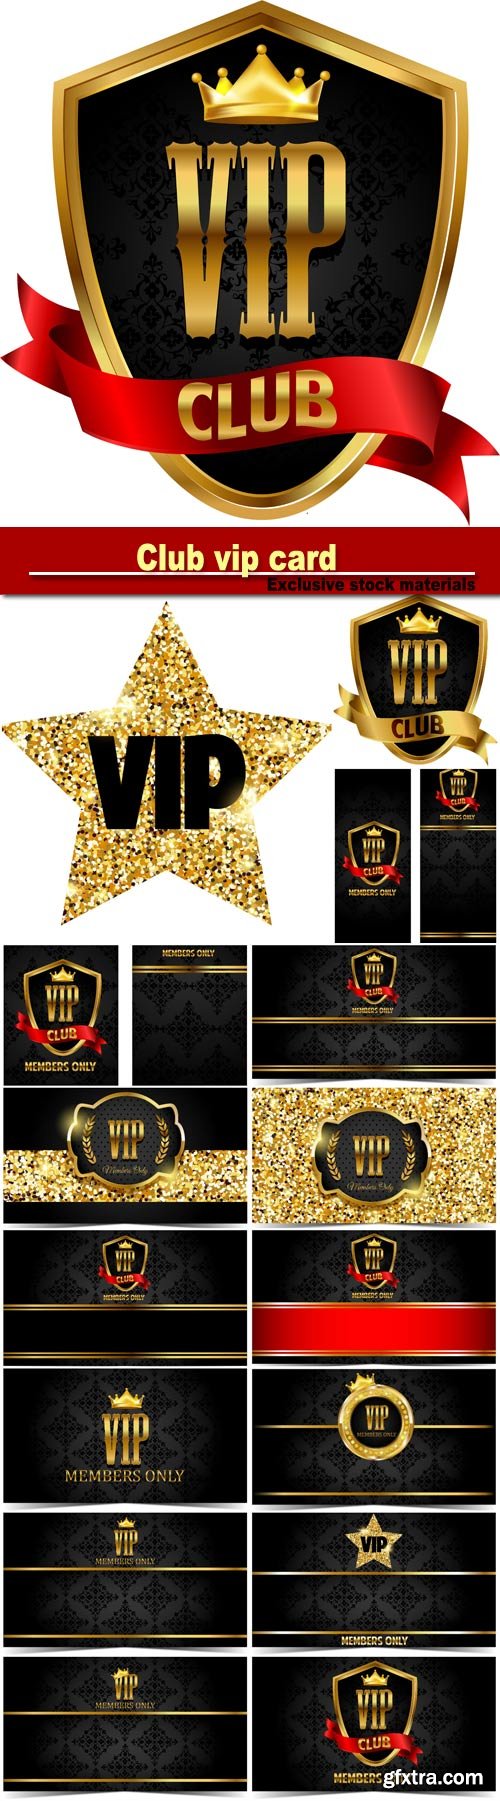 VIP club, vector card